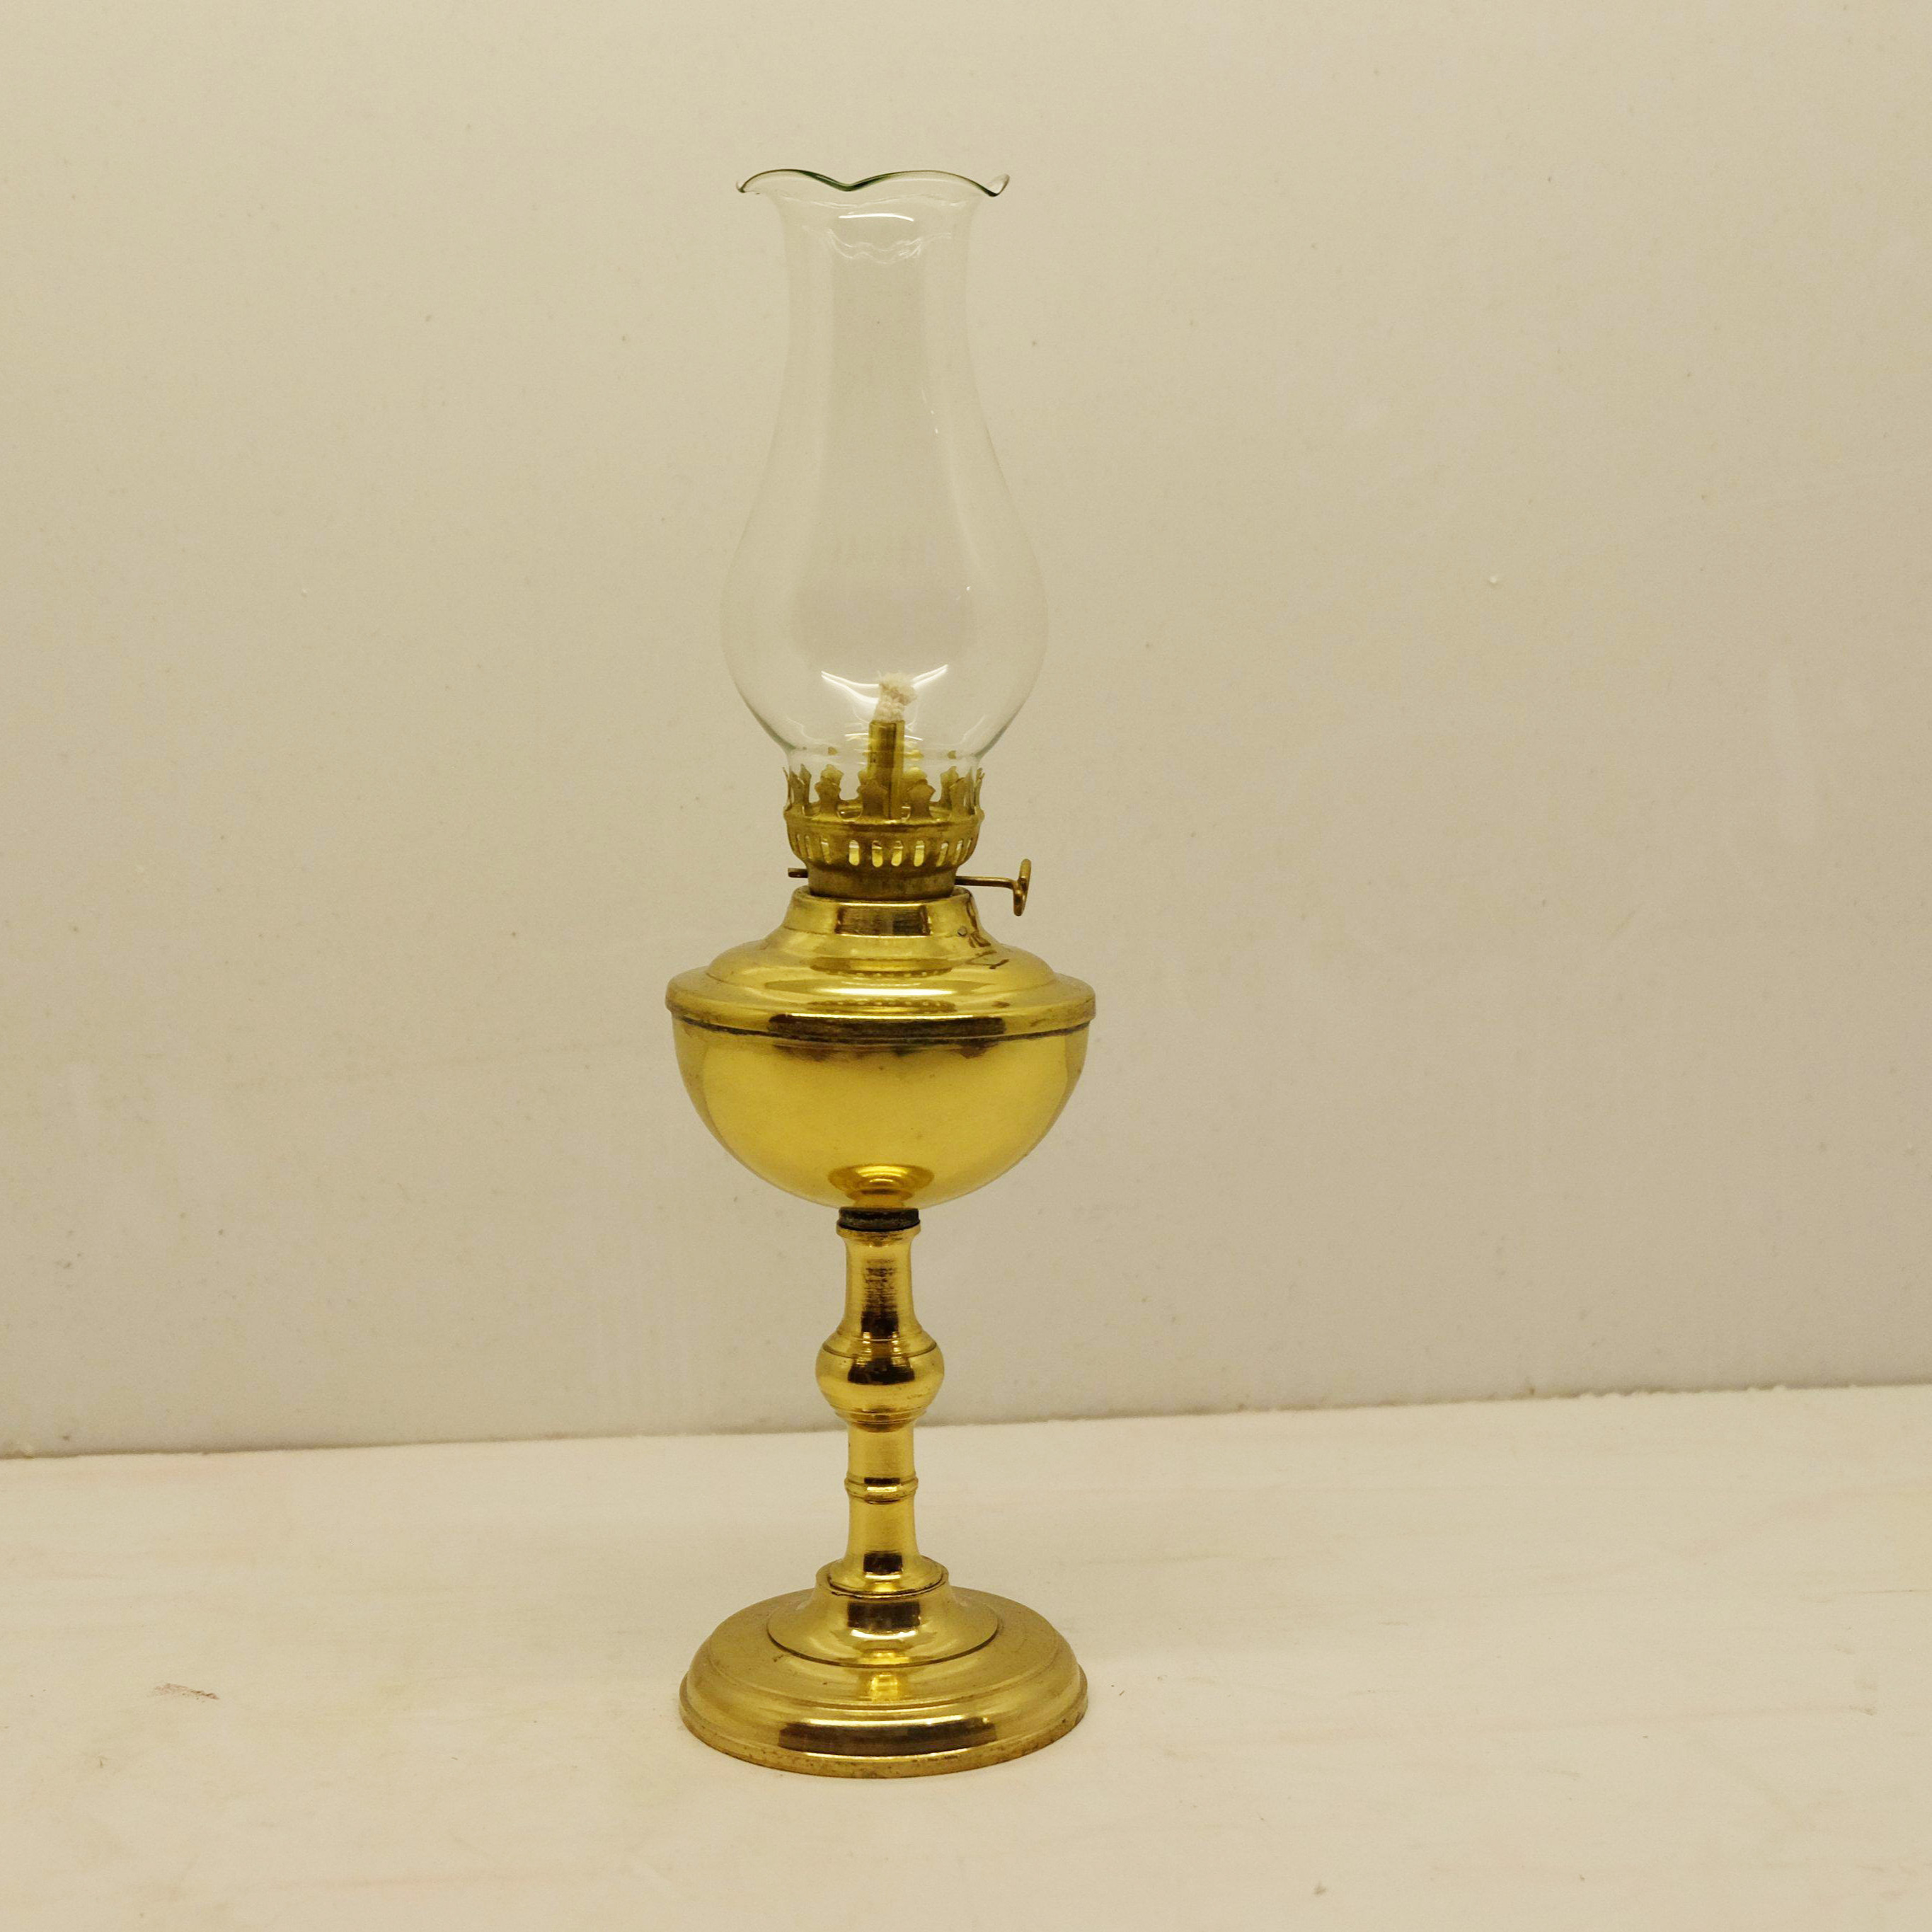 Cách lựa chọn đèn dầu trên bàn thờ hợp phong thuỷ